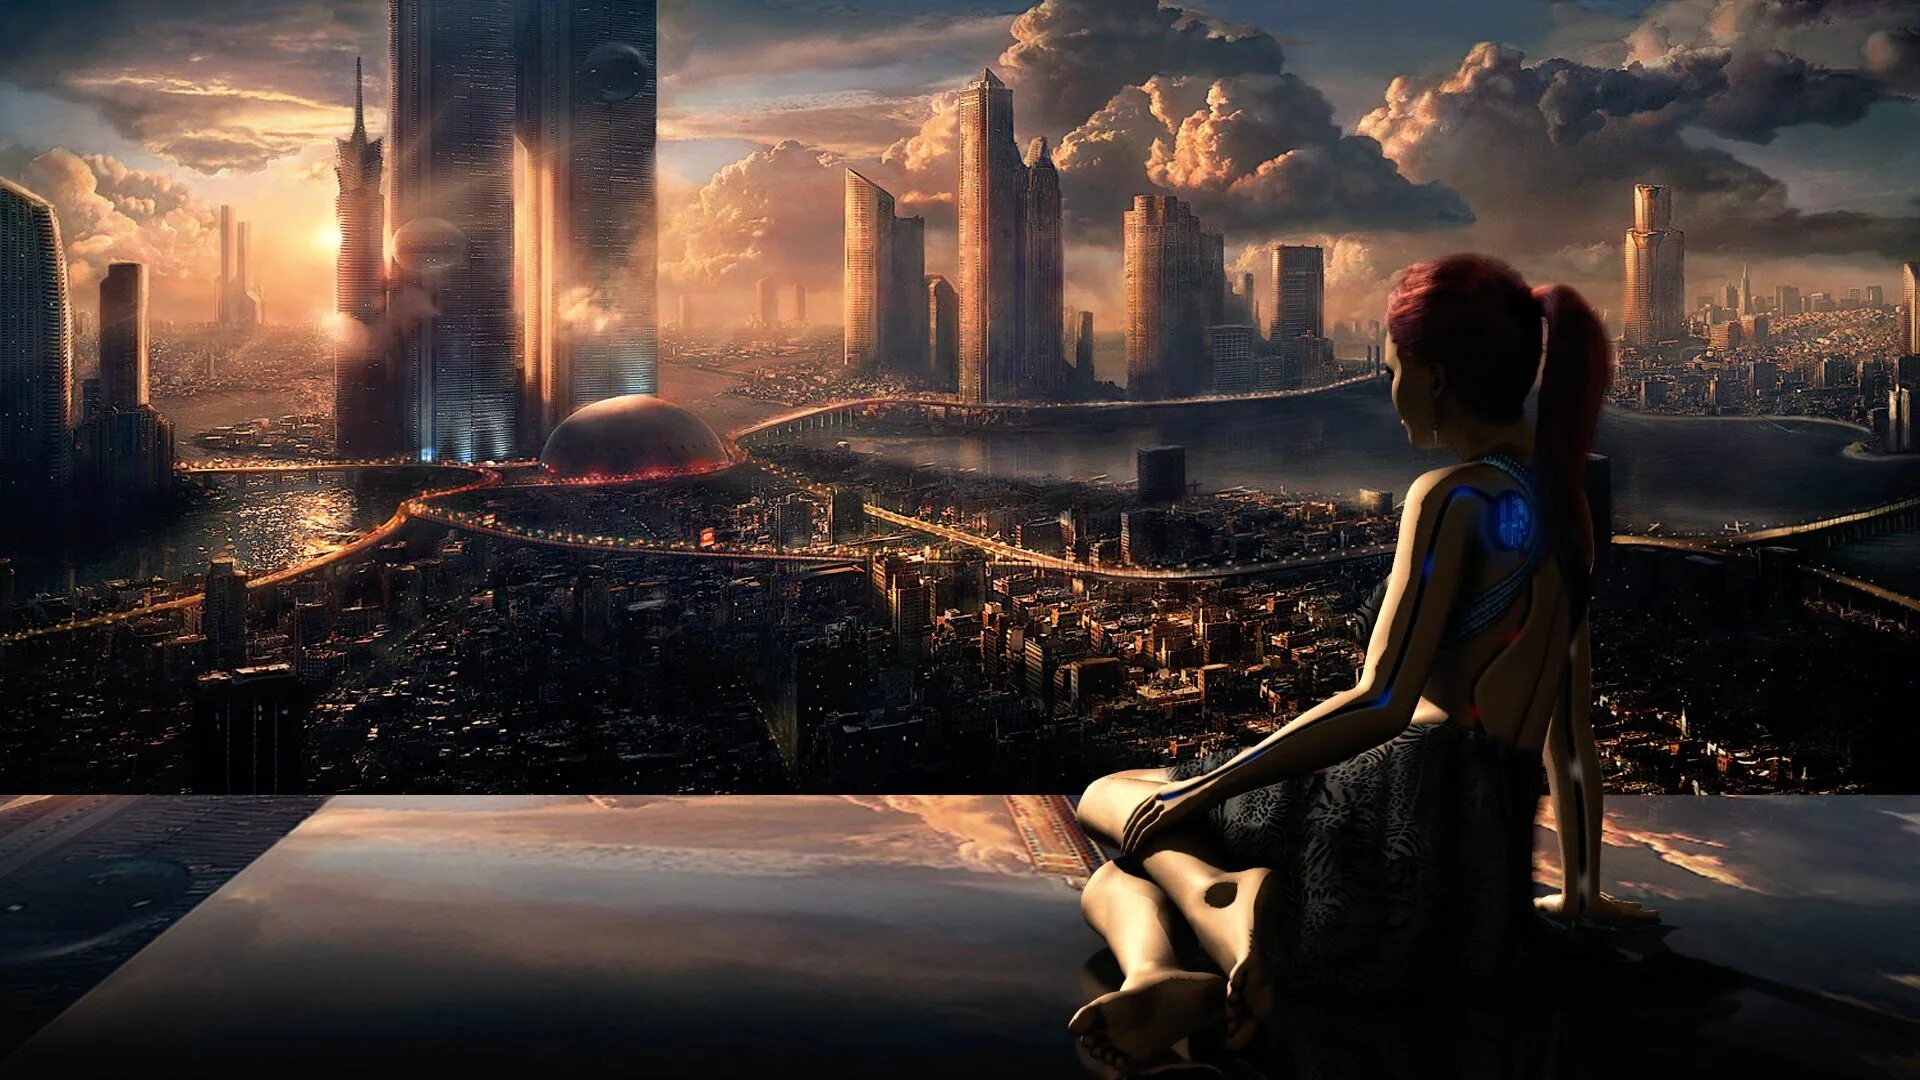 Другое будущее. Фантастический город. Пейзаж будущего. Девушка в городе будущего. Фантастические пейзажи будущего.